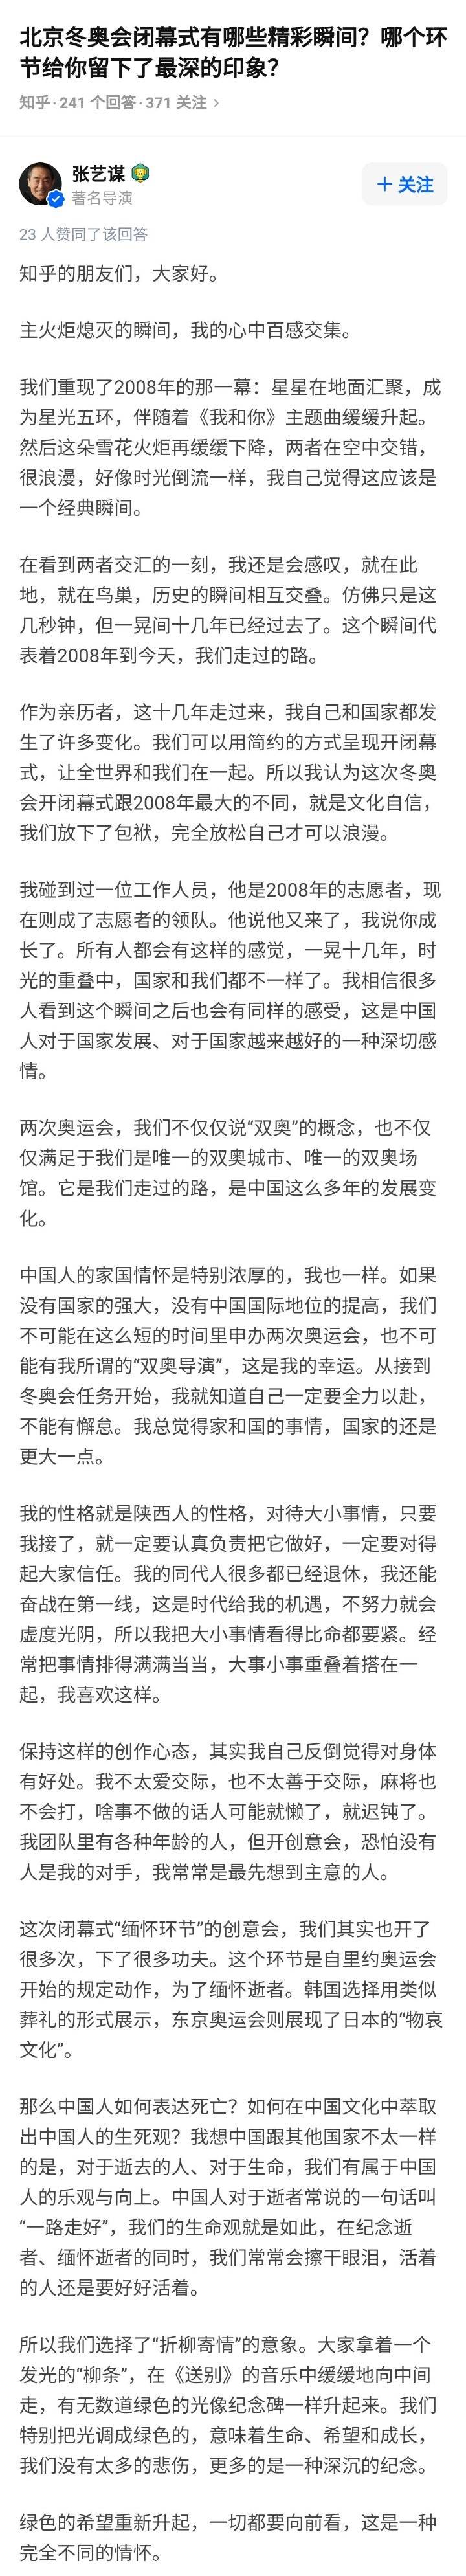 北京冬奥闭幕式结束 张艺谋谈中国人的家国情怀